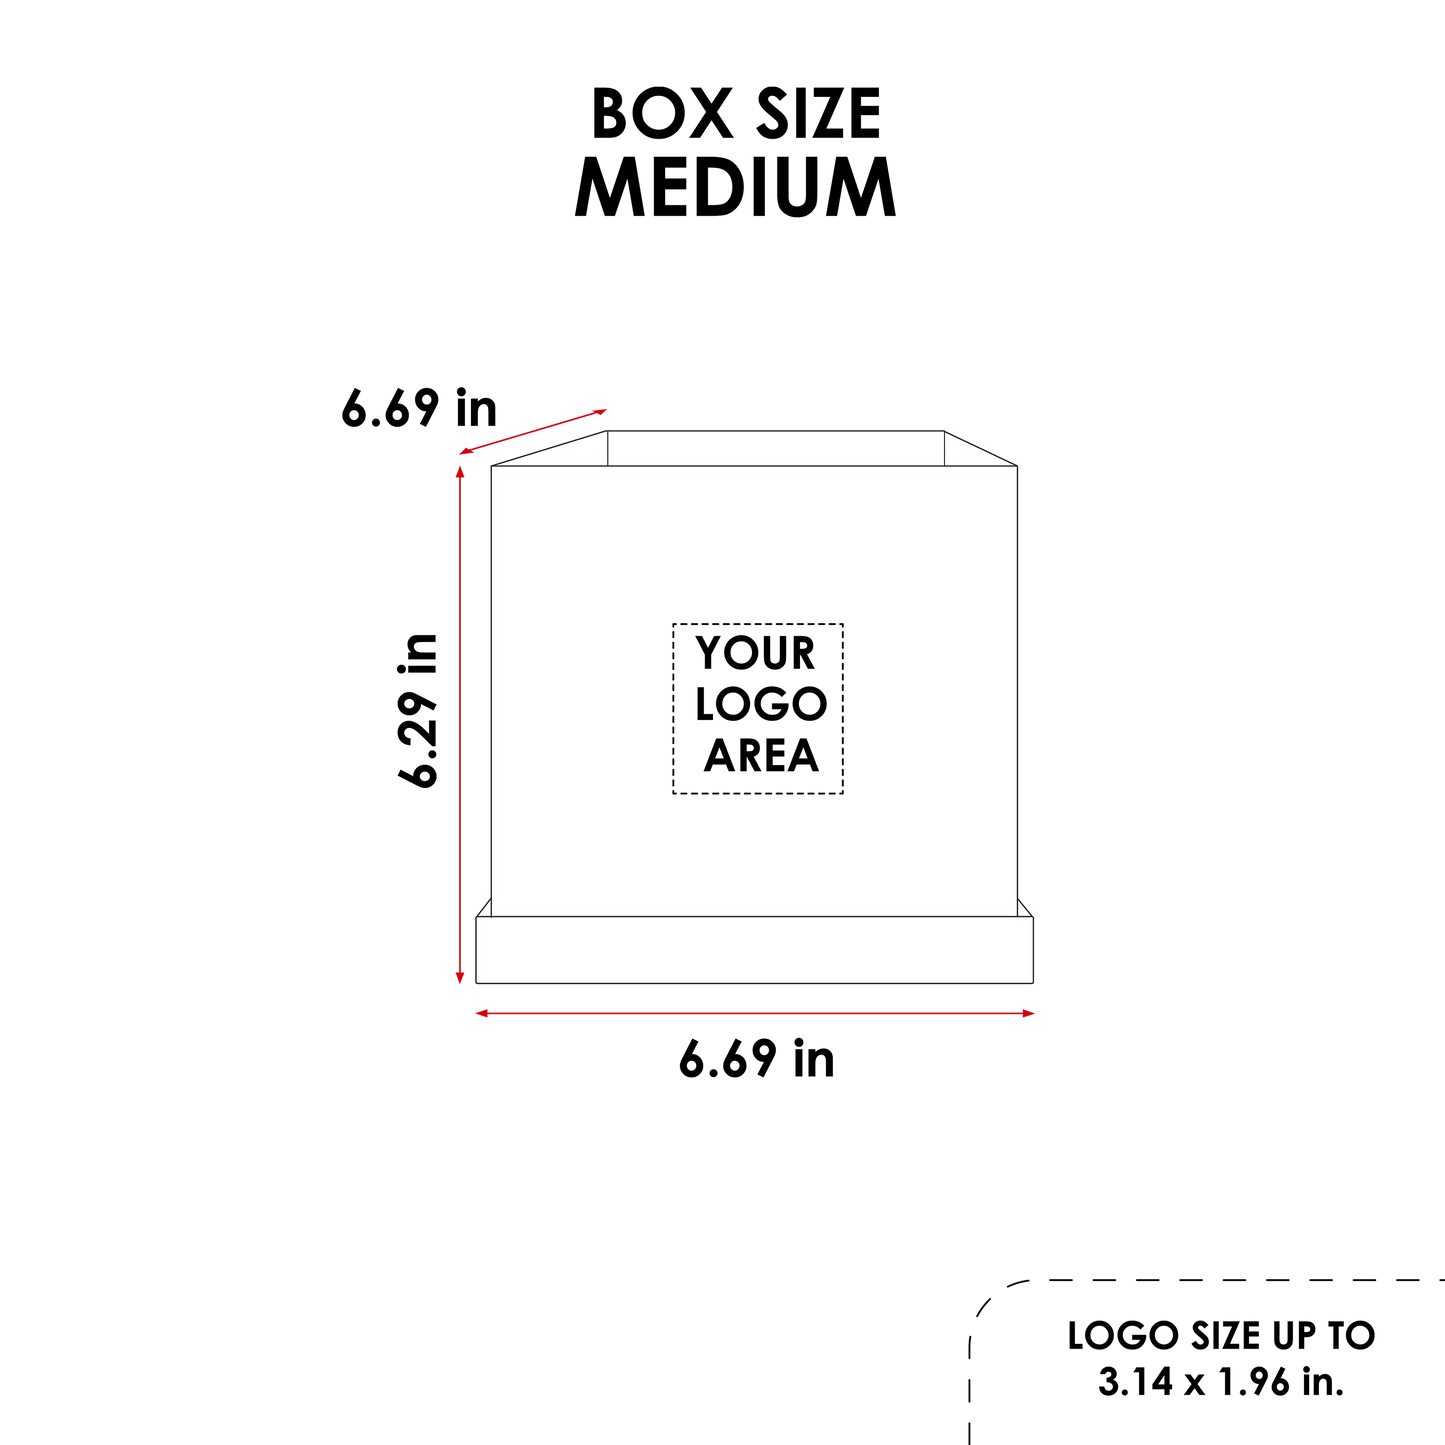 Kit 3 different sizes square shape boxes 3 in 1 - Velvet Black